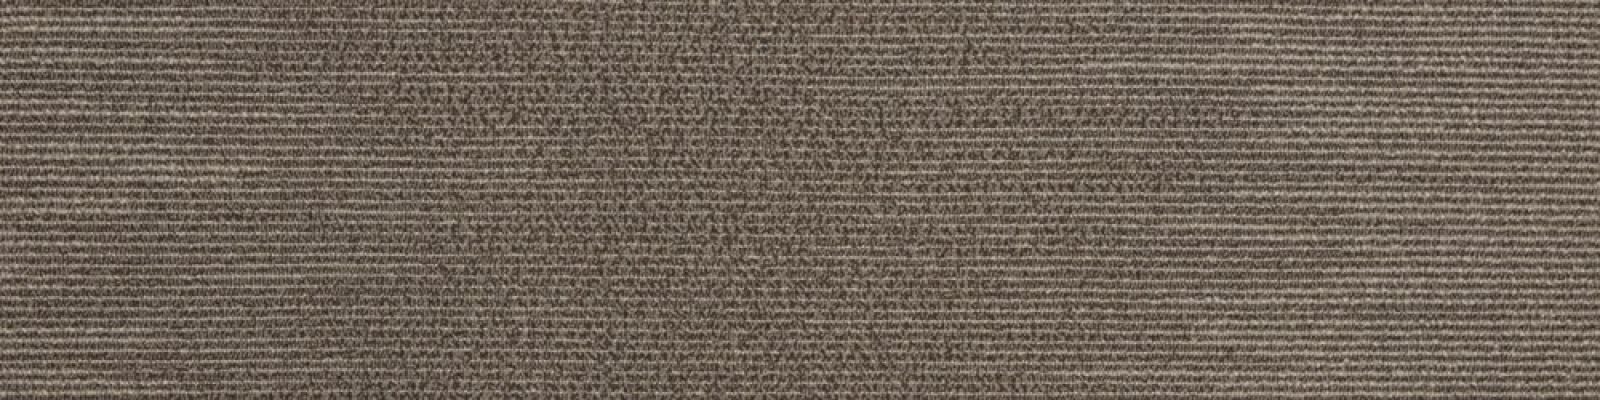 Carpet Tiles : Silver-Sea-09